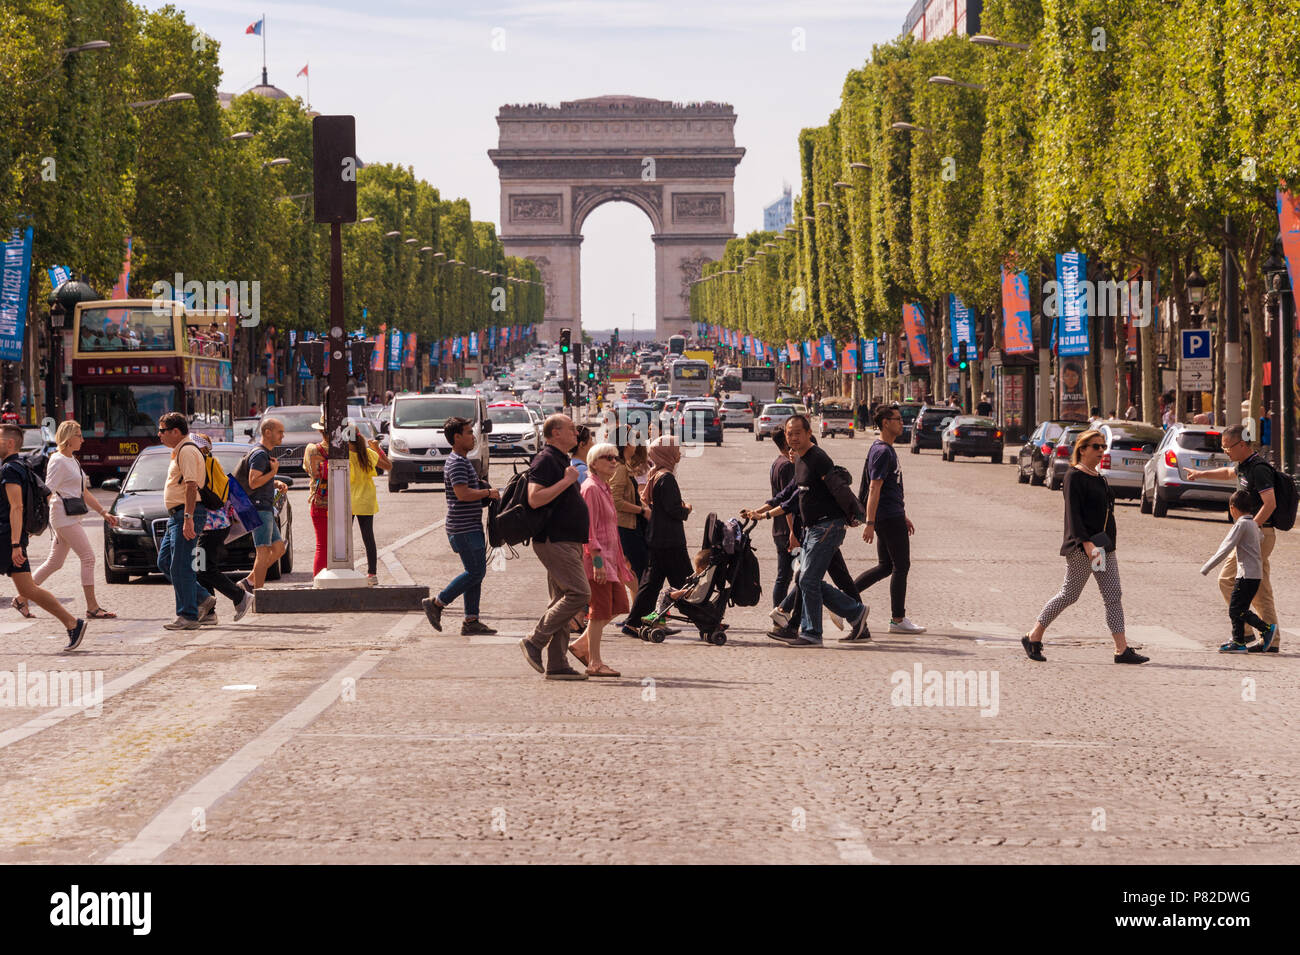 Paris, France - 23 juin 2018 : une foule de personnes traversant l'Avenue des Champs-Elysées avec l'Arc de Triomphe en arrière-plan Banque D'Images